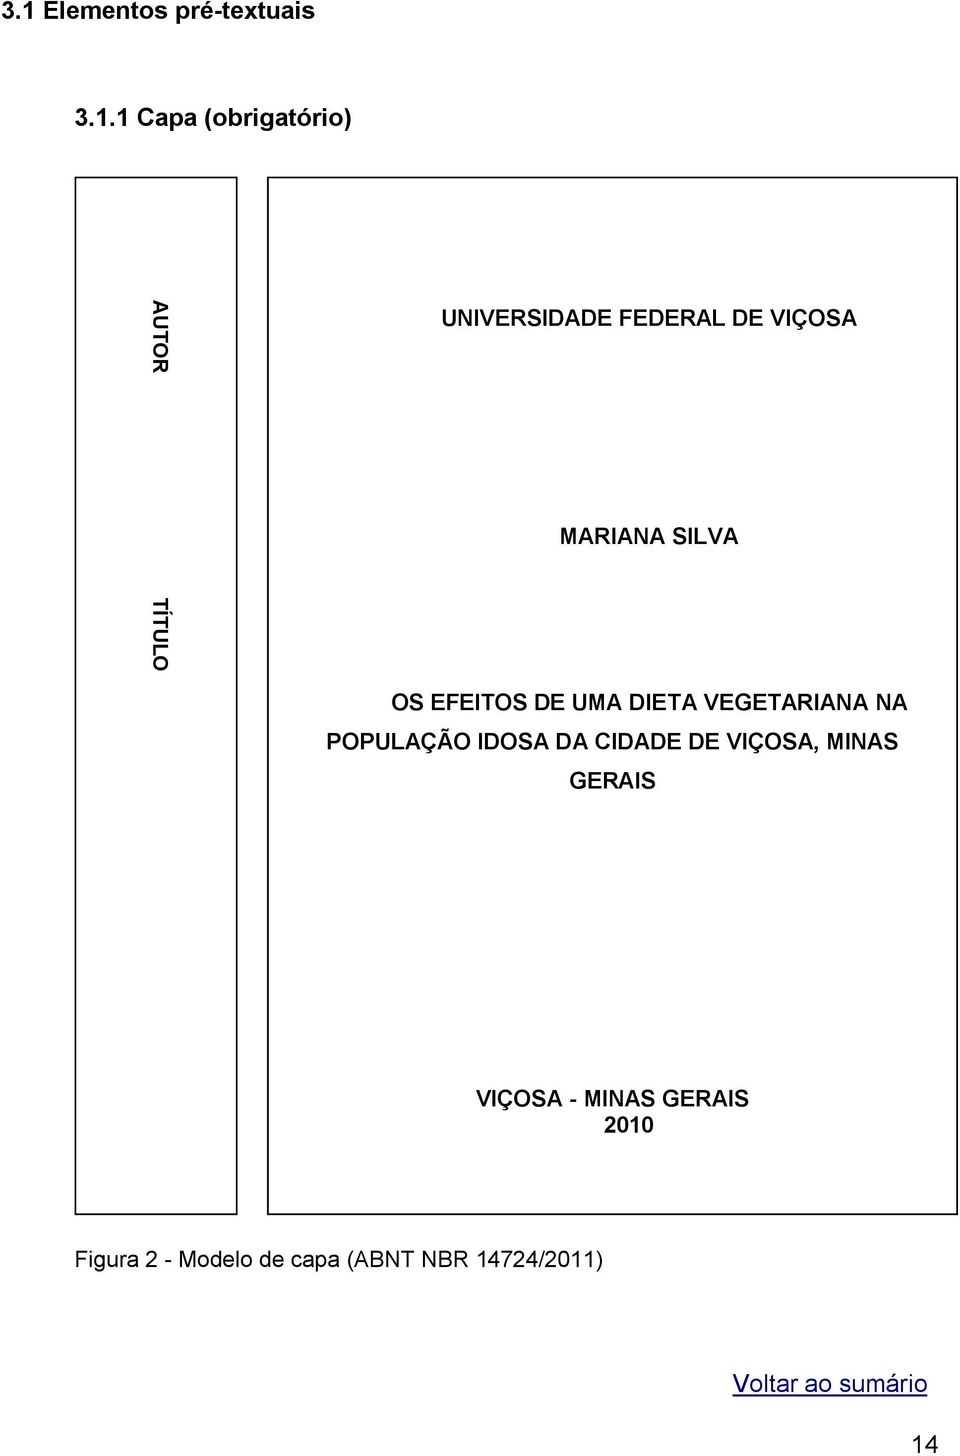 1 Capa (obrigatório) UNIVERSIDADE FEDERAL DE VIÇOSA MARIANA SILVA OS